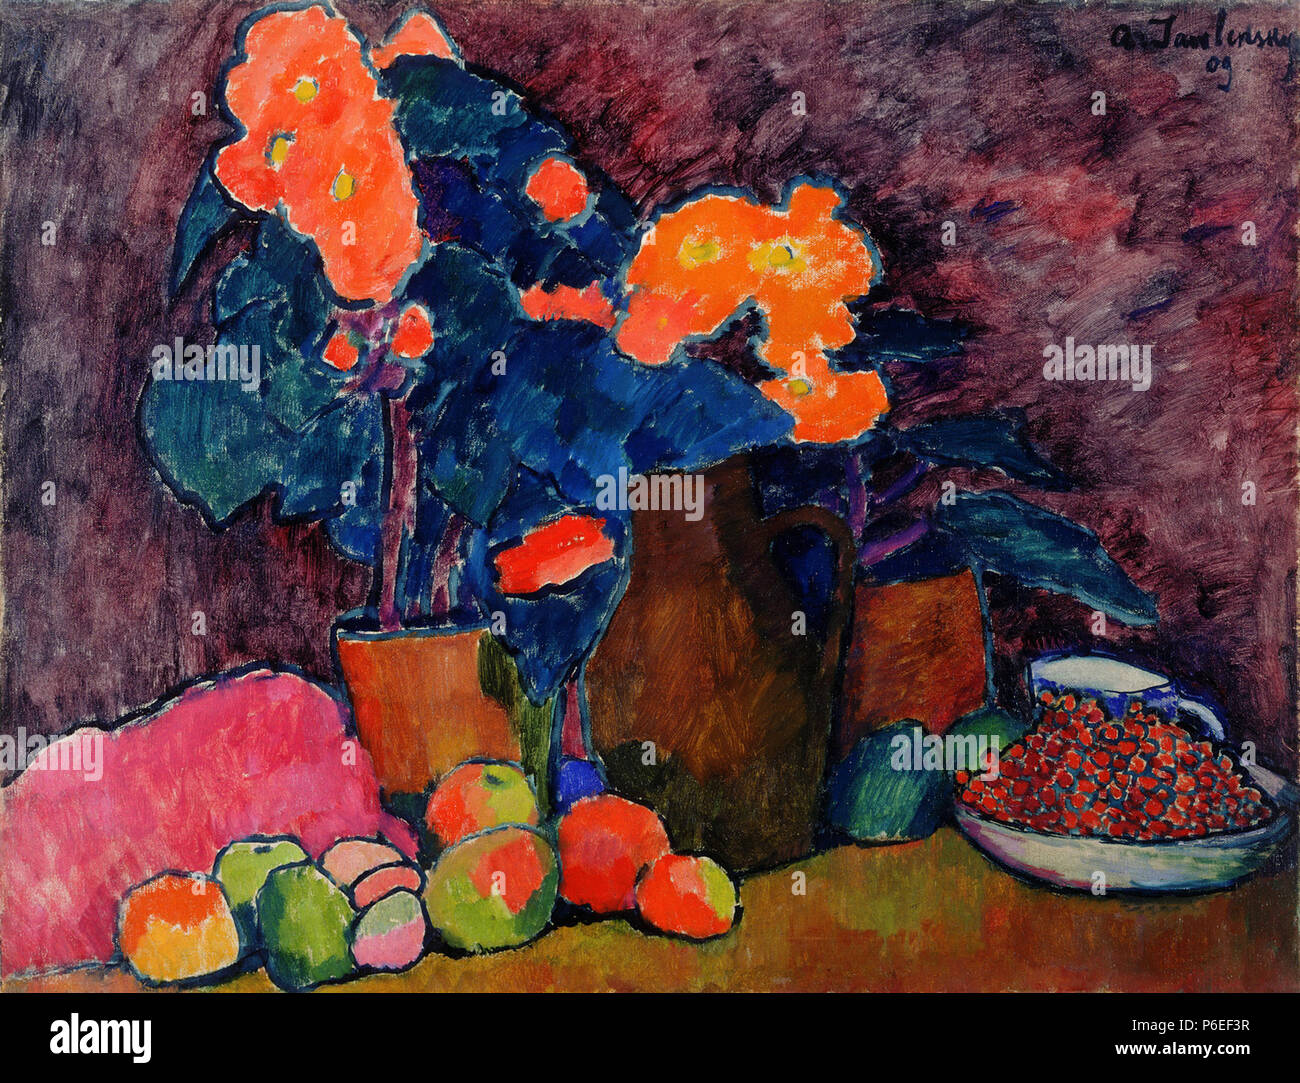 4 T 4 Alexej von Jawlensky - Cvetje, sadje in vrč Stock Photo - Alamy